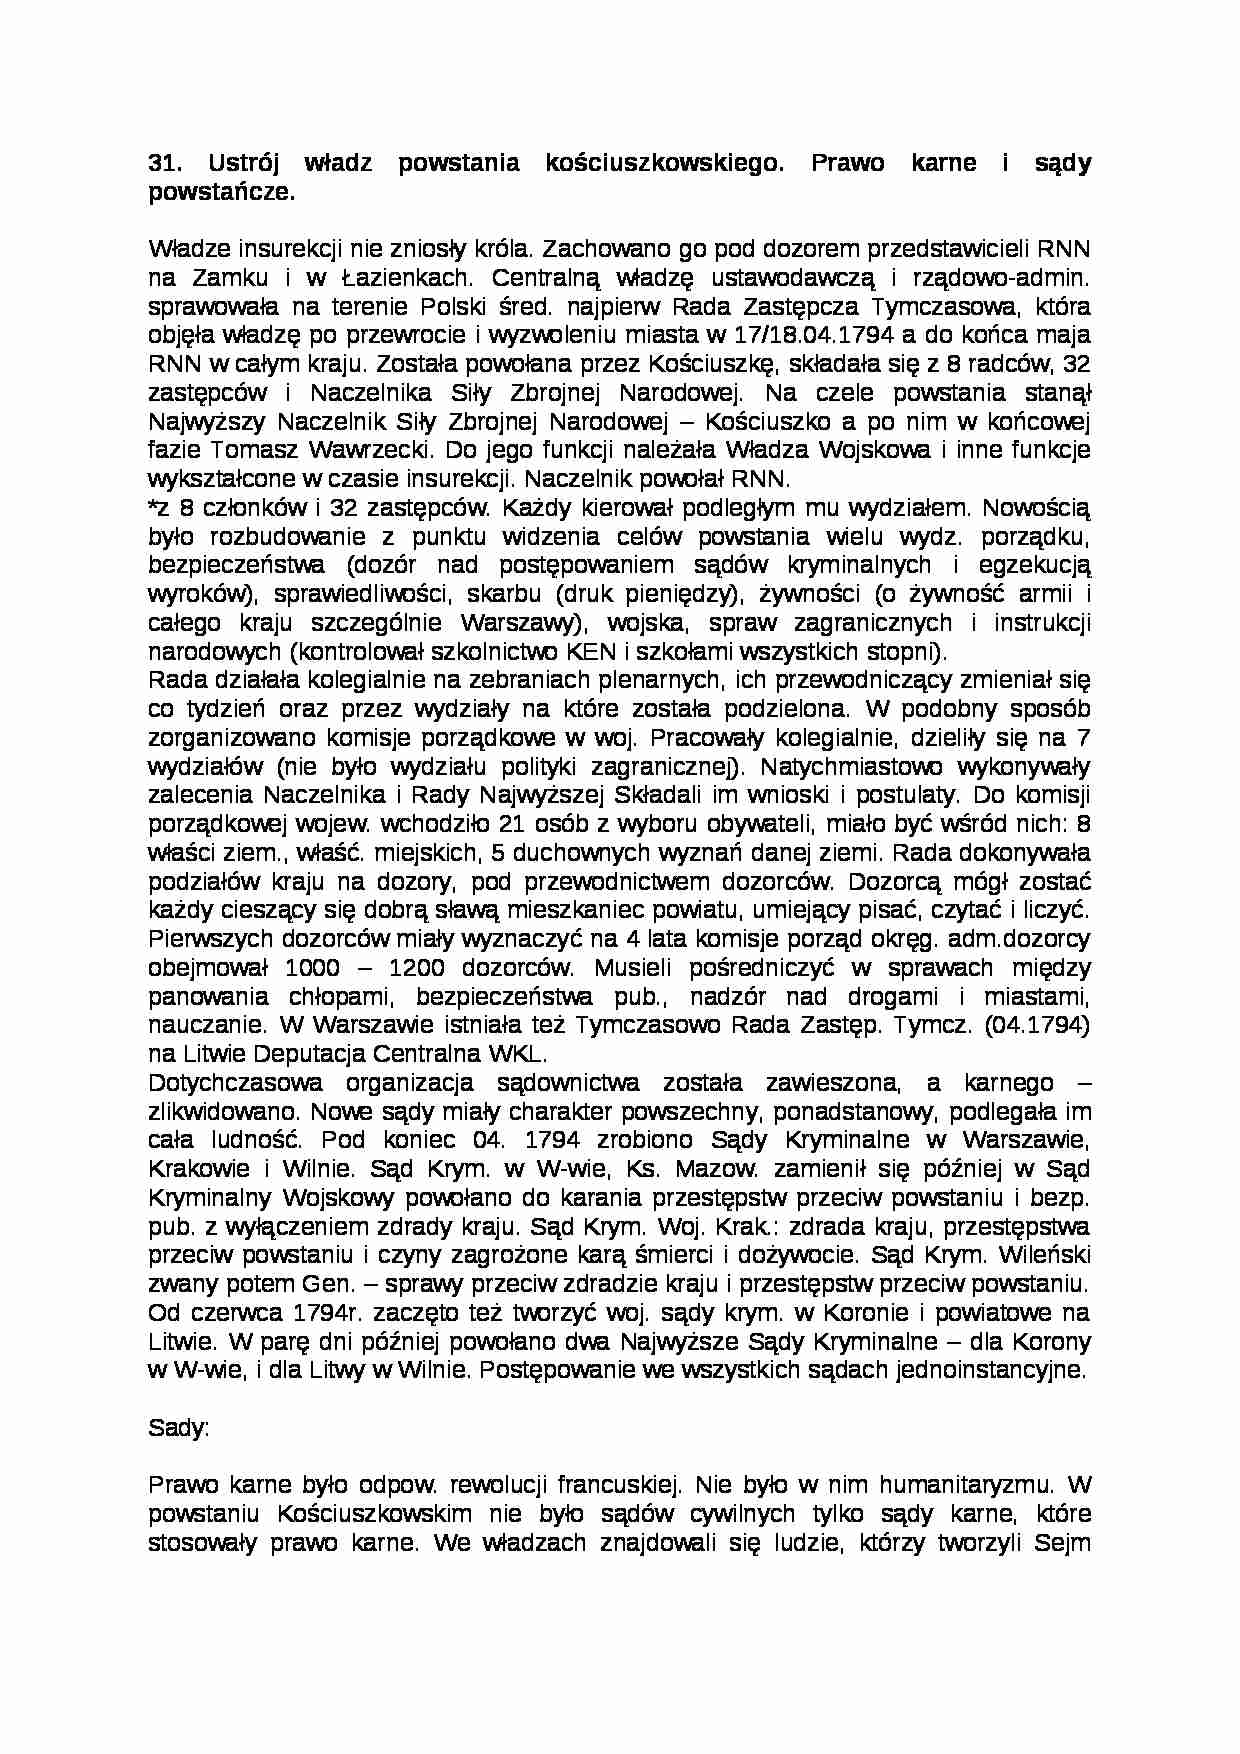 Ustrój władz powstania kościuszkowskiego - strona 1